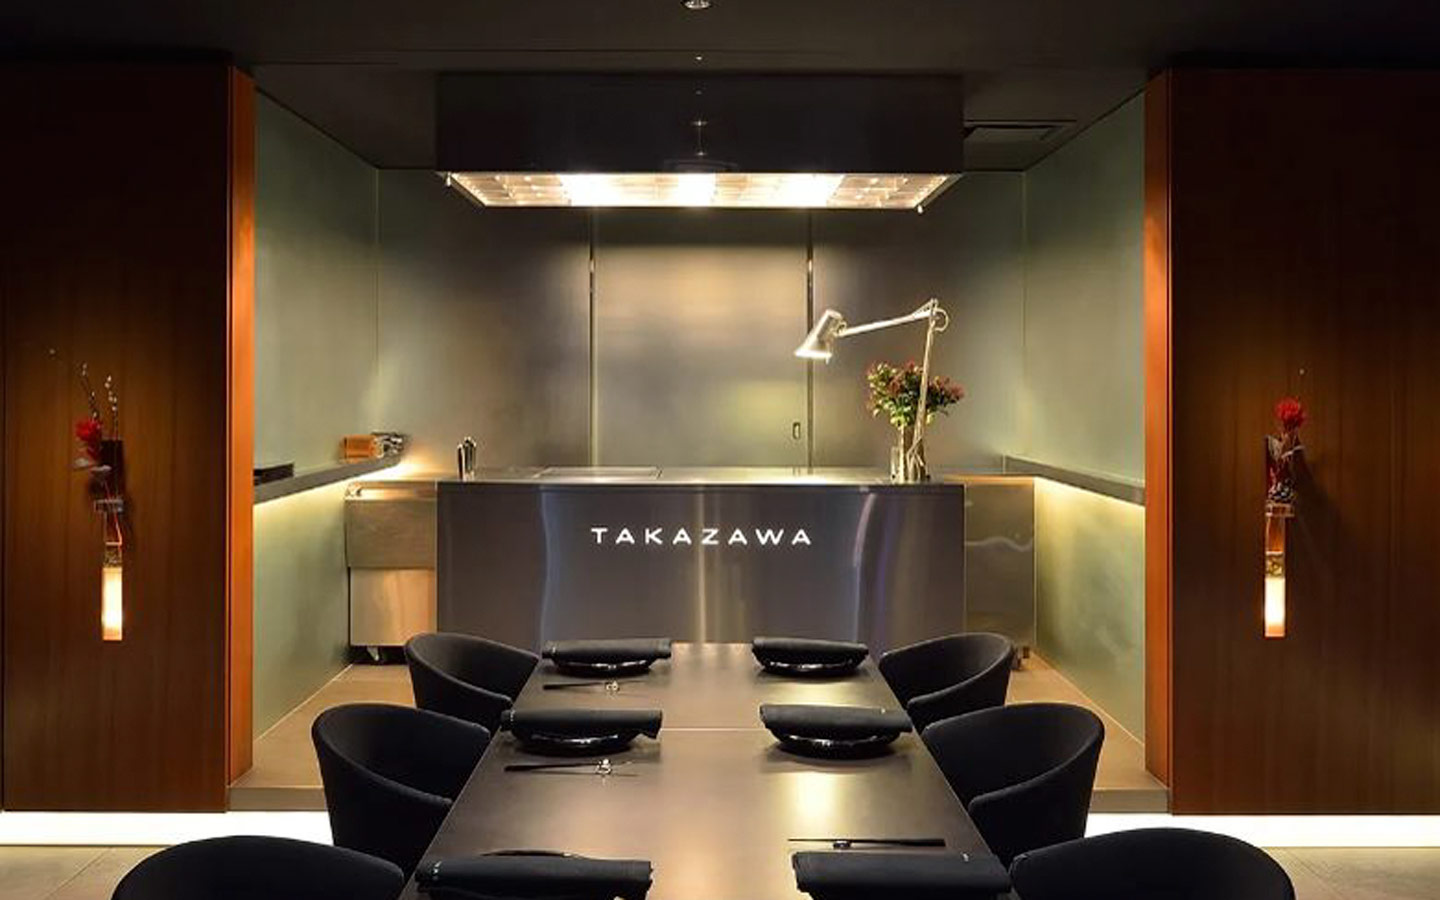 Takazawa, comida fusion franco-japonesa